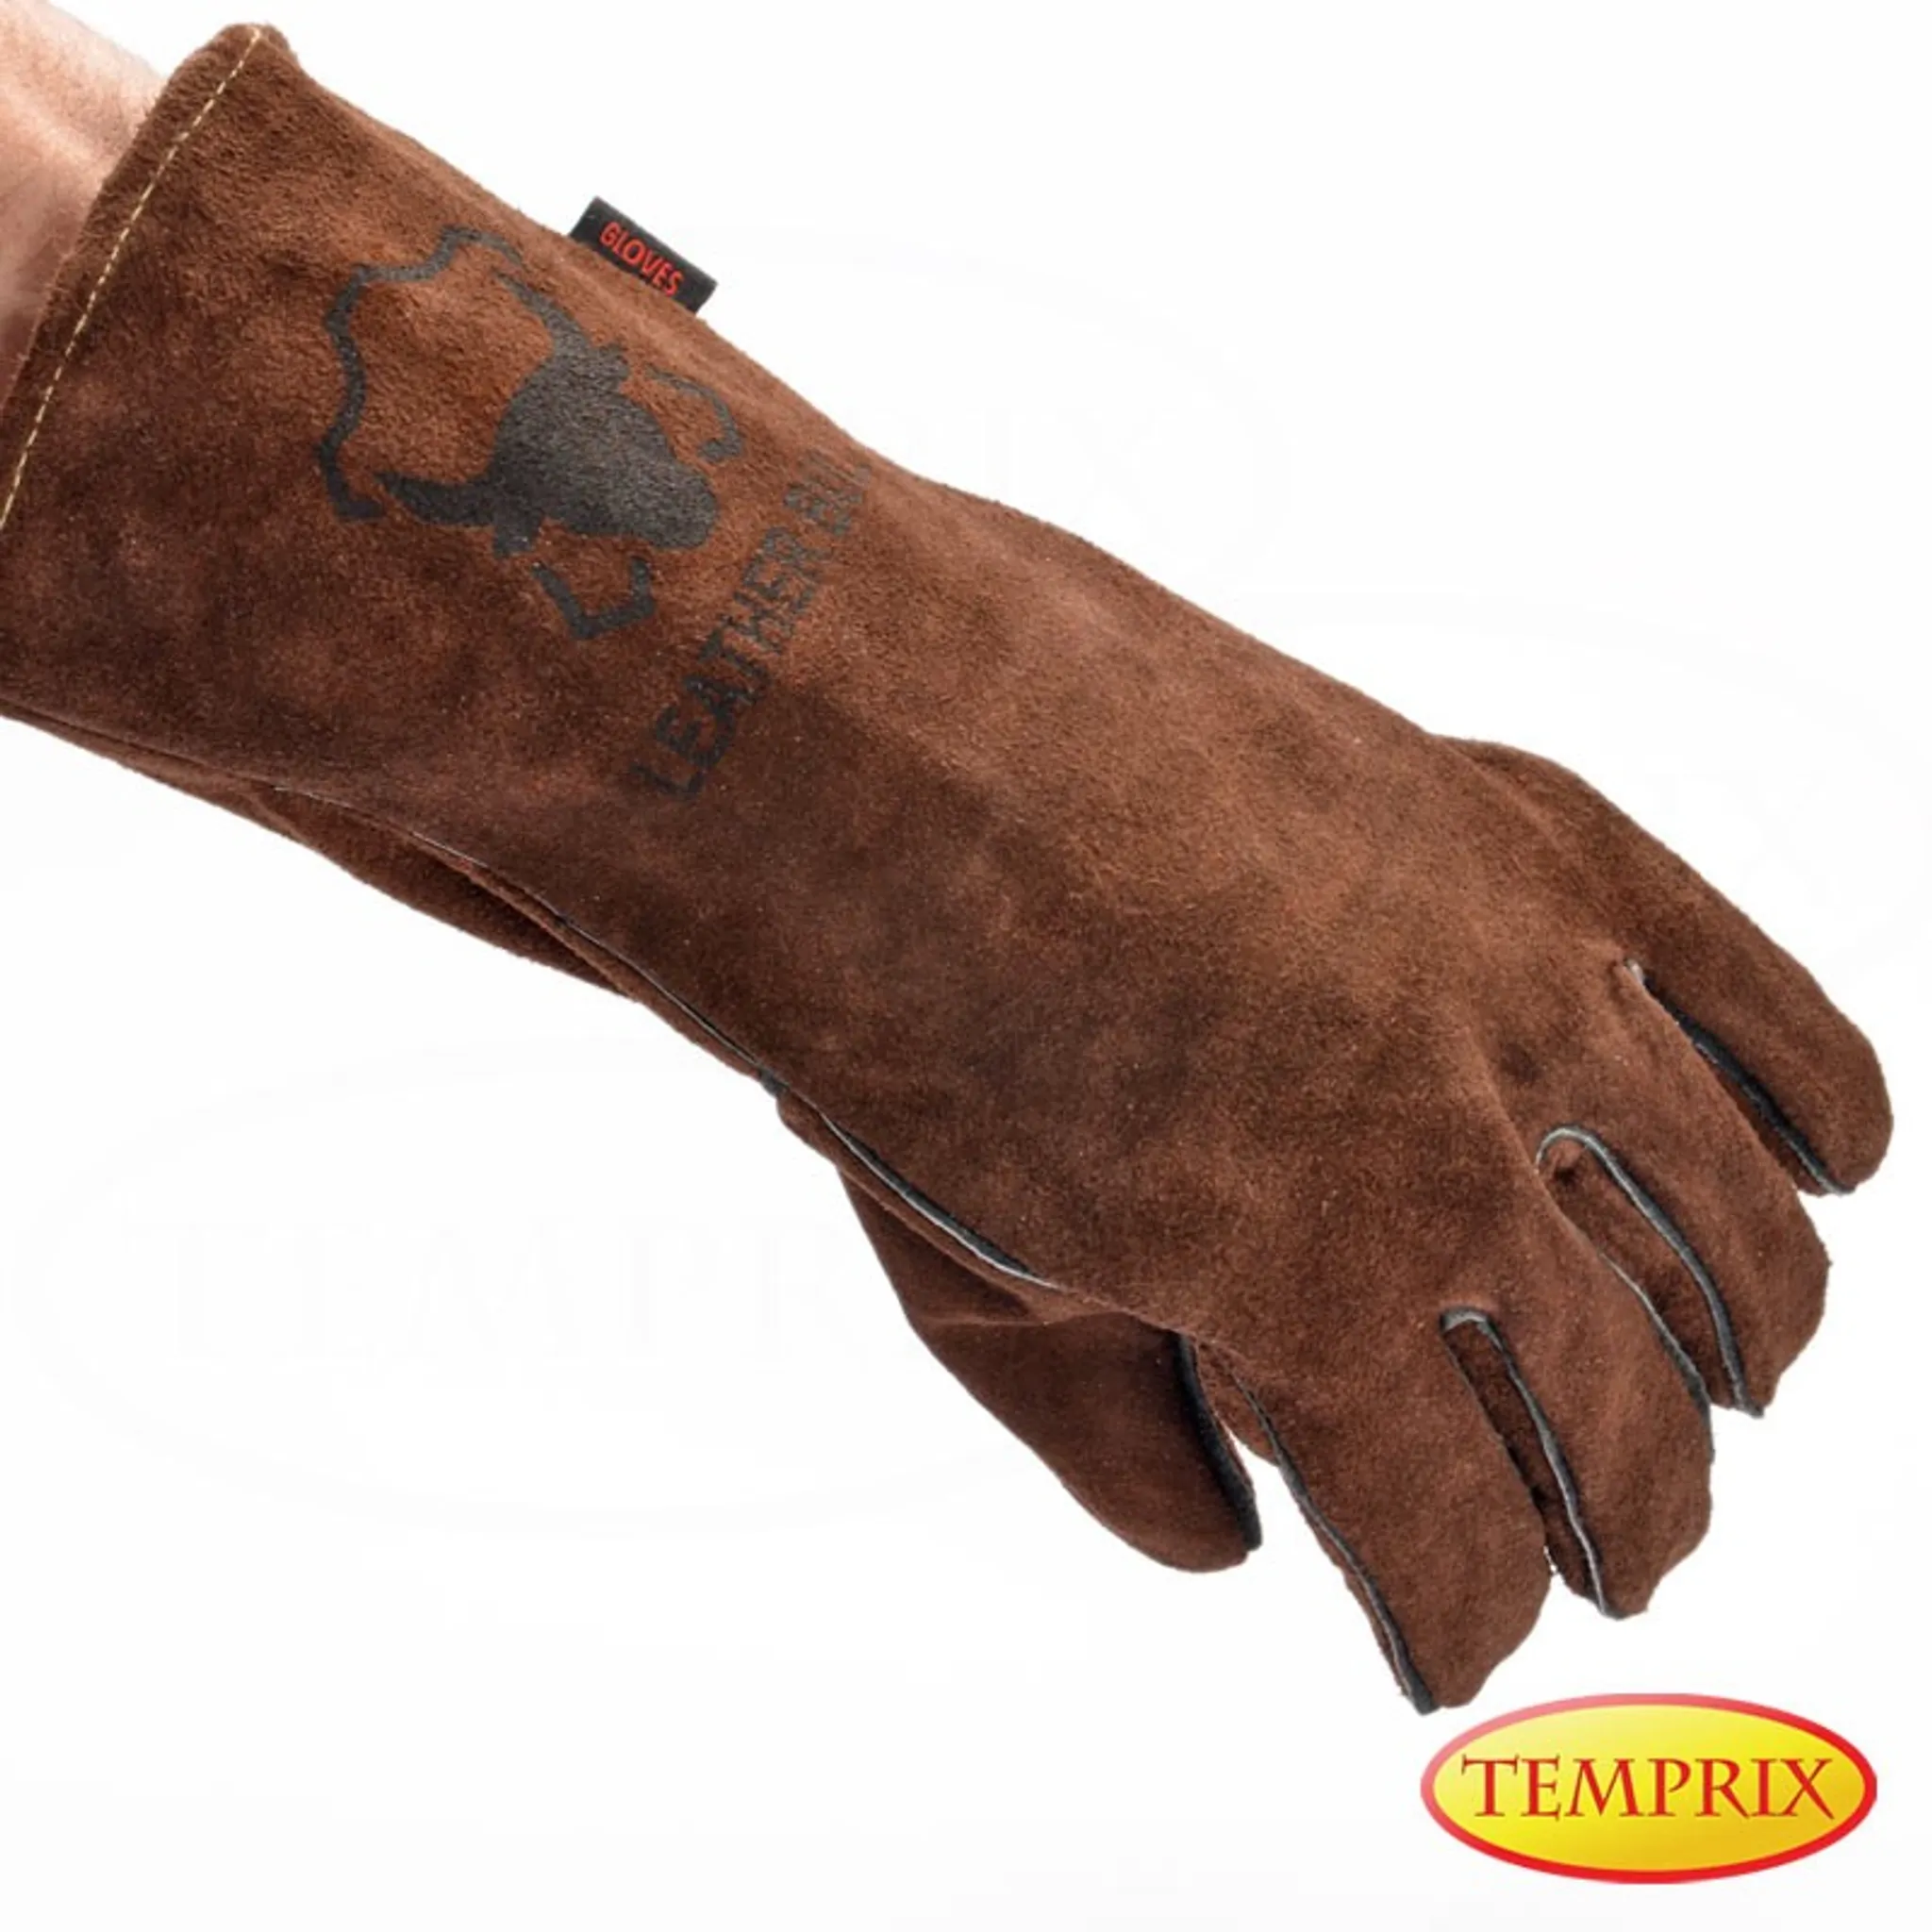 Handschuhe aus echtem Leder Markenqualität von Temprix Version Premium Ofen geeignet für Kamin Grill & Backofen Farbe schwarz/grau 